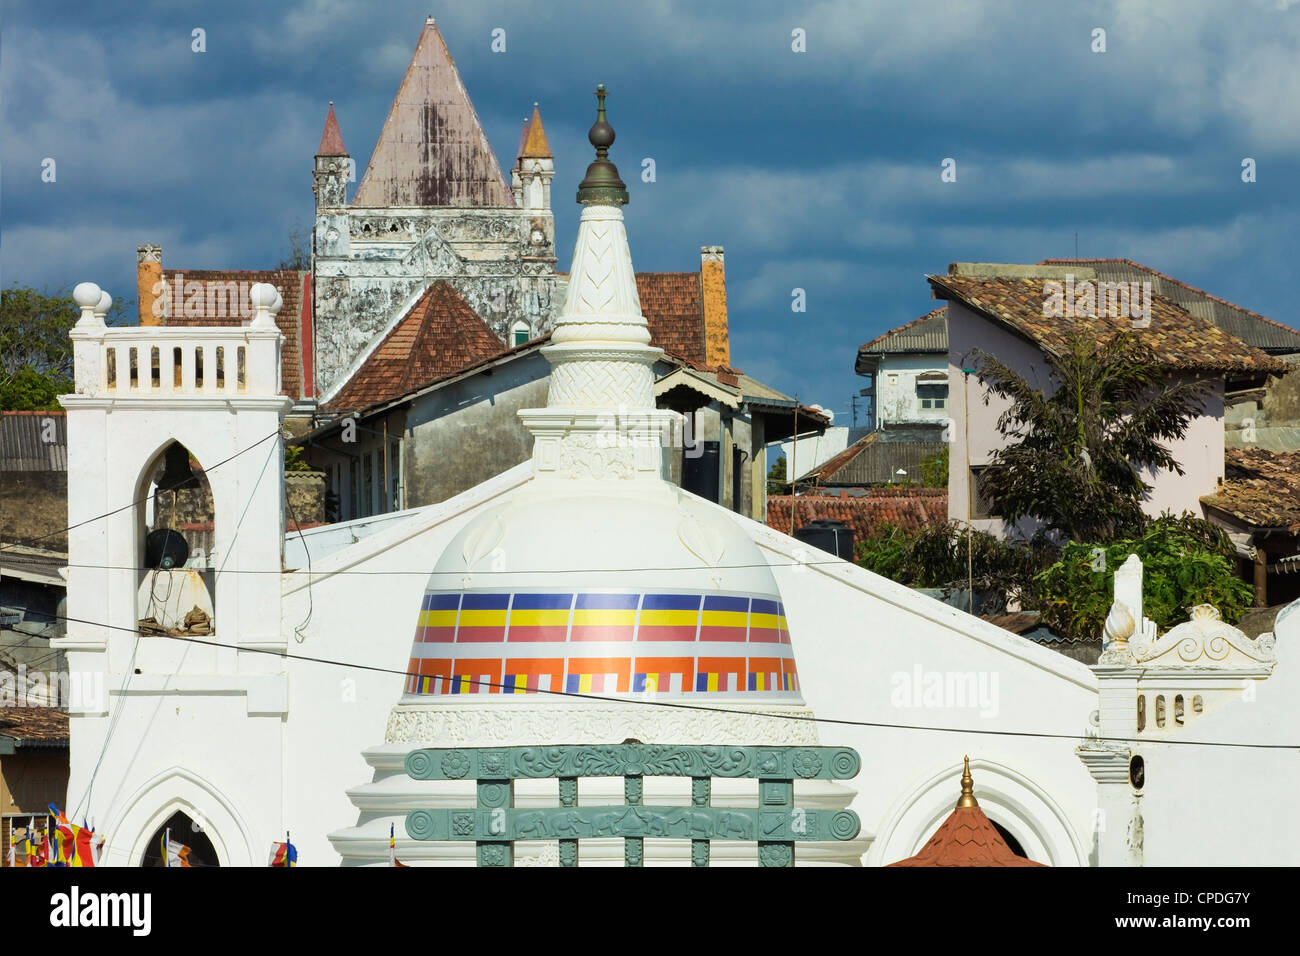 Shri Sudarmalaya tempio Buddista e di tutti i santi della Chiesa Anglicana all'interno del vecchio stile coloniale Olandese Fort, Galle, Sri Lanka, Asia Foto Stock